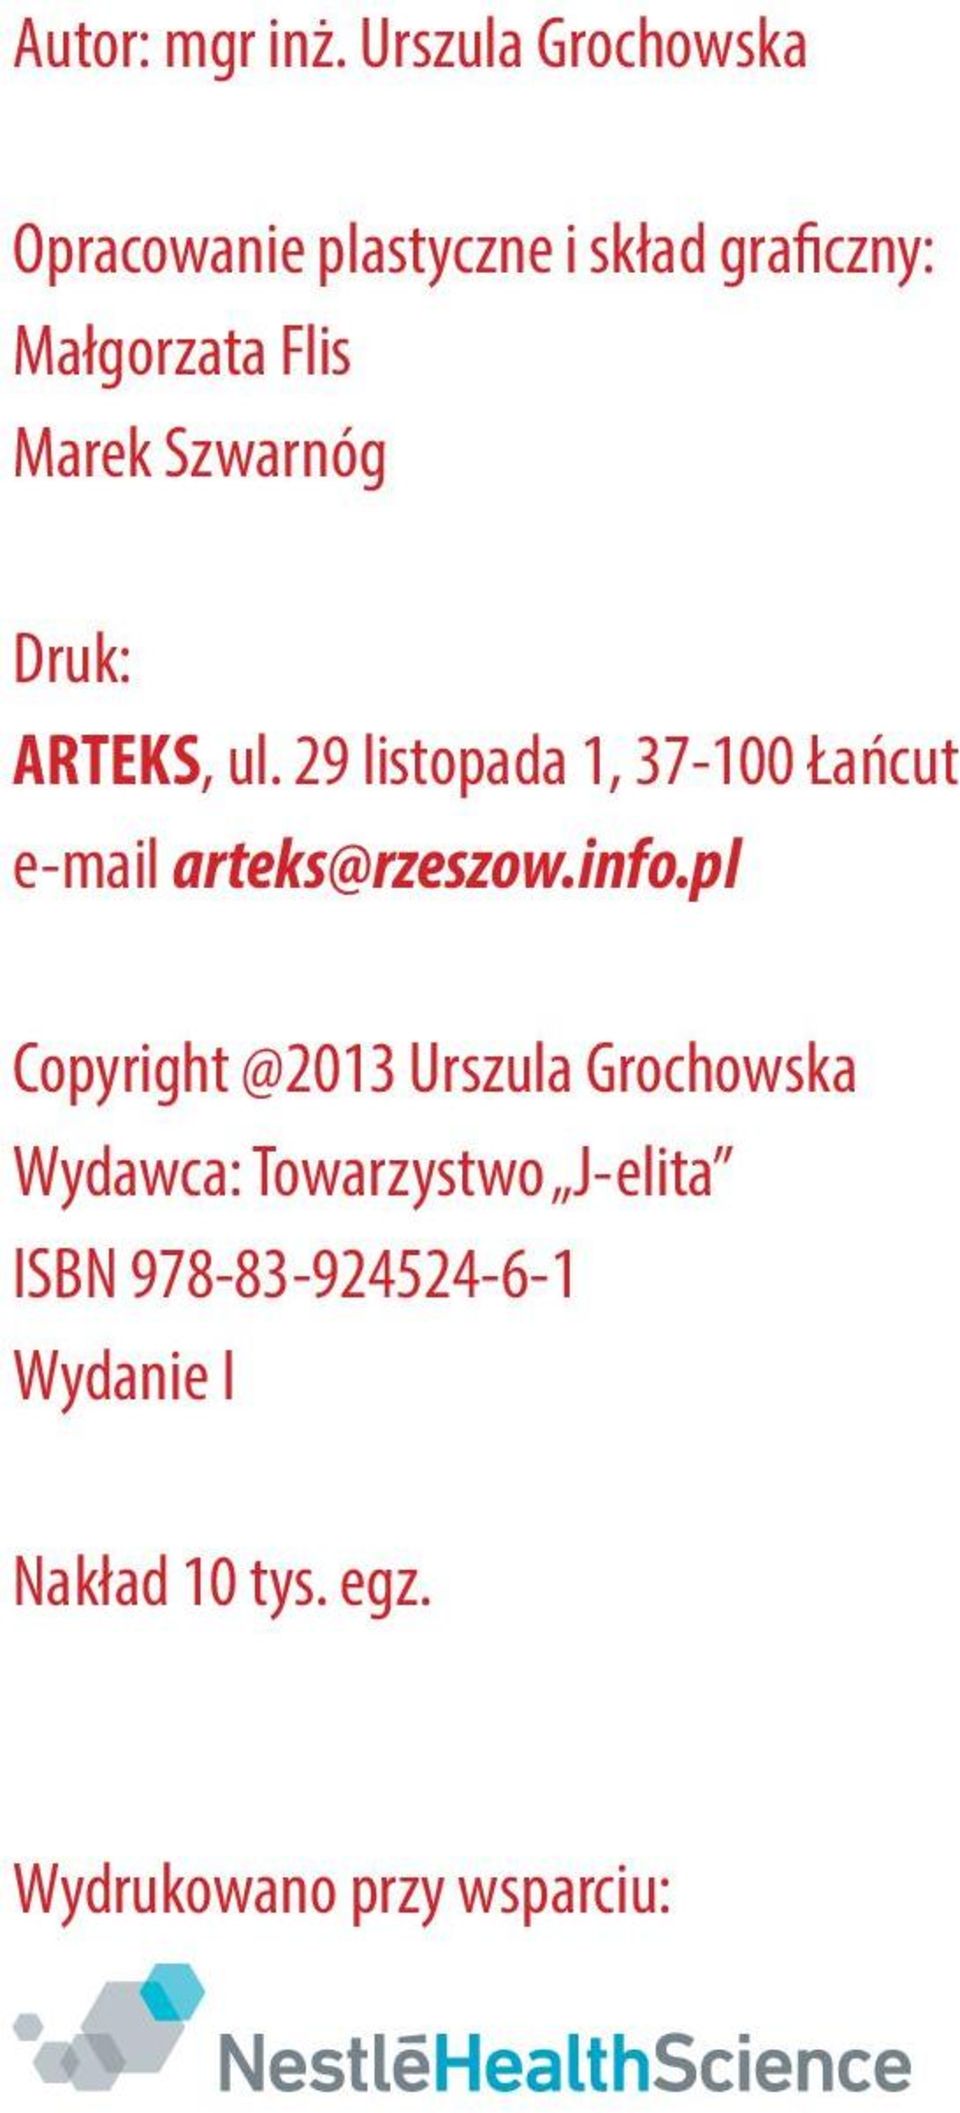 Szwarnóg Druk: ARTEKS, ul. 29 listopada 1, 37-100 Łańcut e-mail arteks@rzeszow.